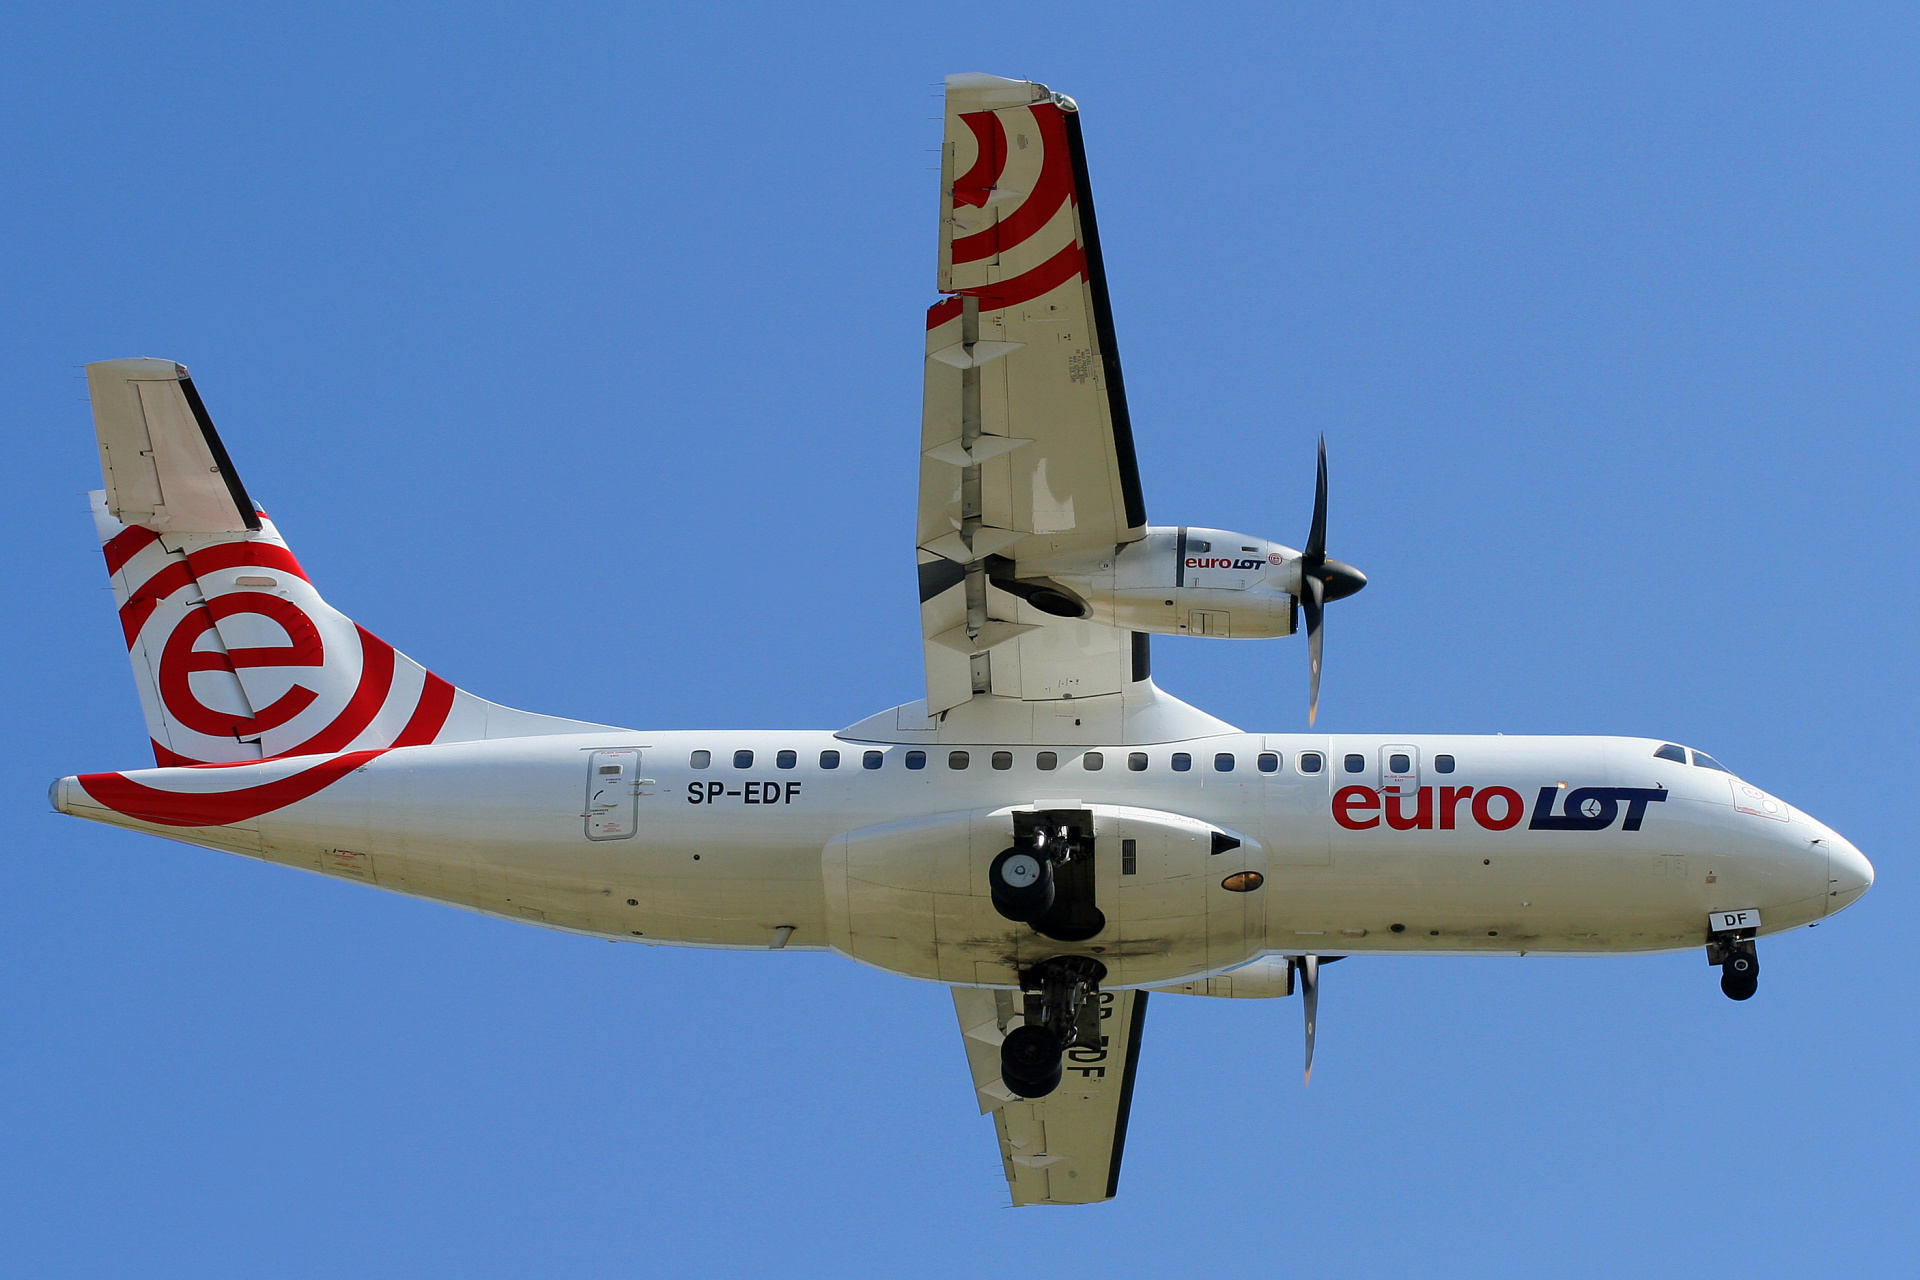 SP-EDF (Aircraft » EPWA Spotting » ATR 42 » EuroLOT)